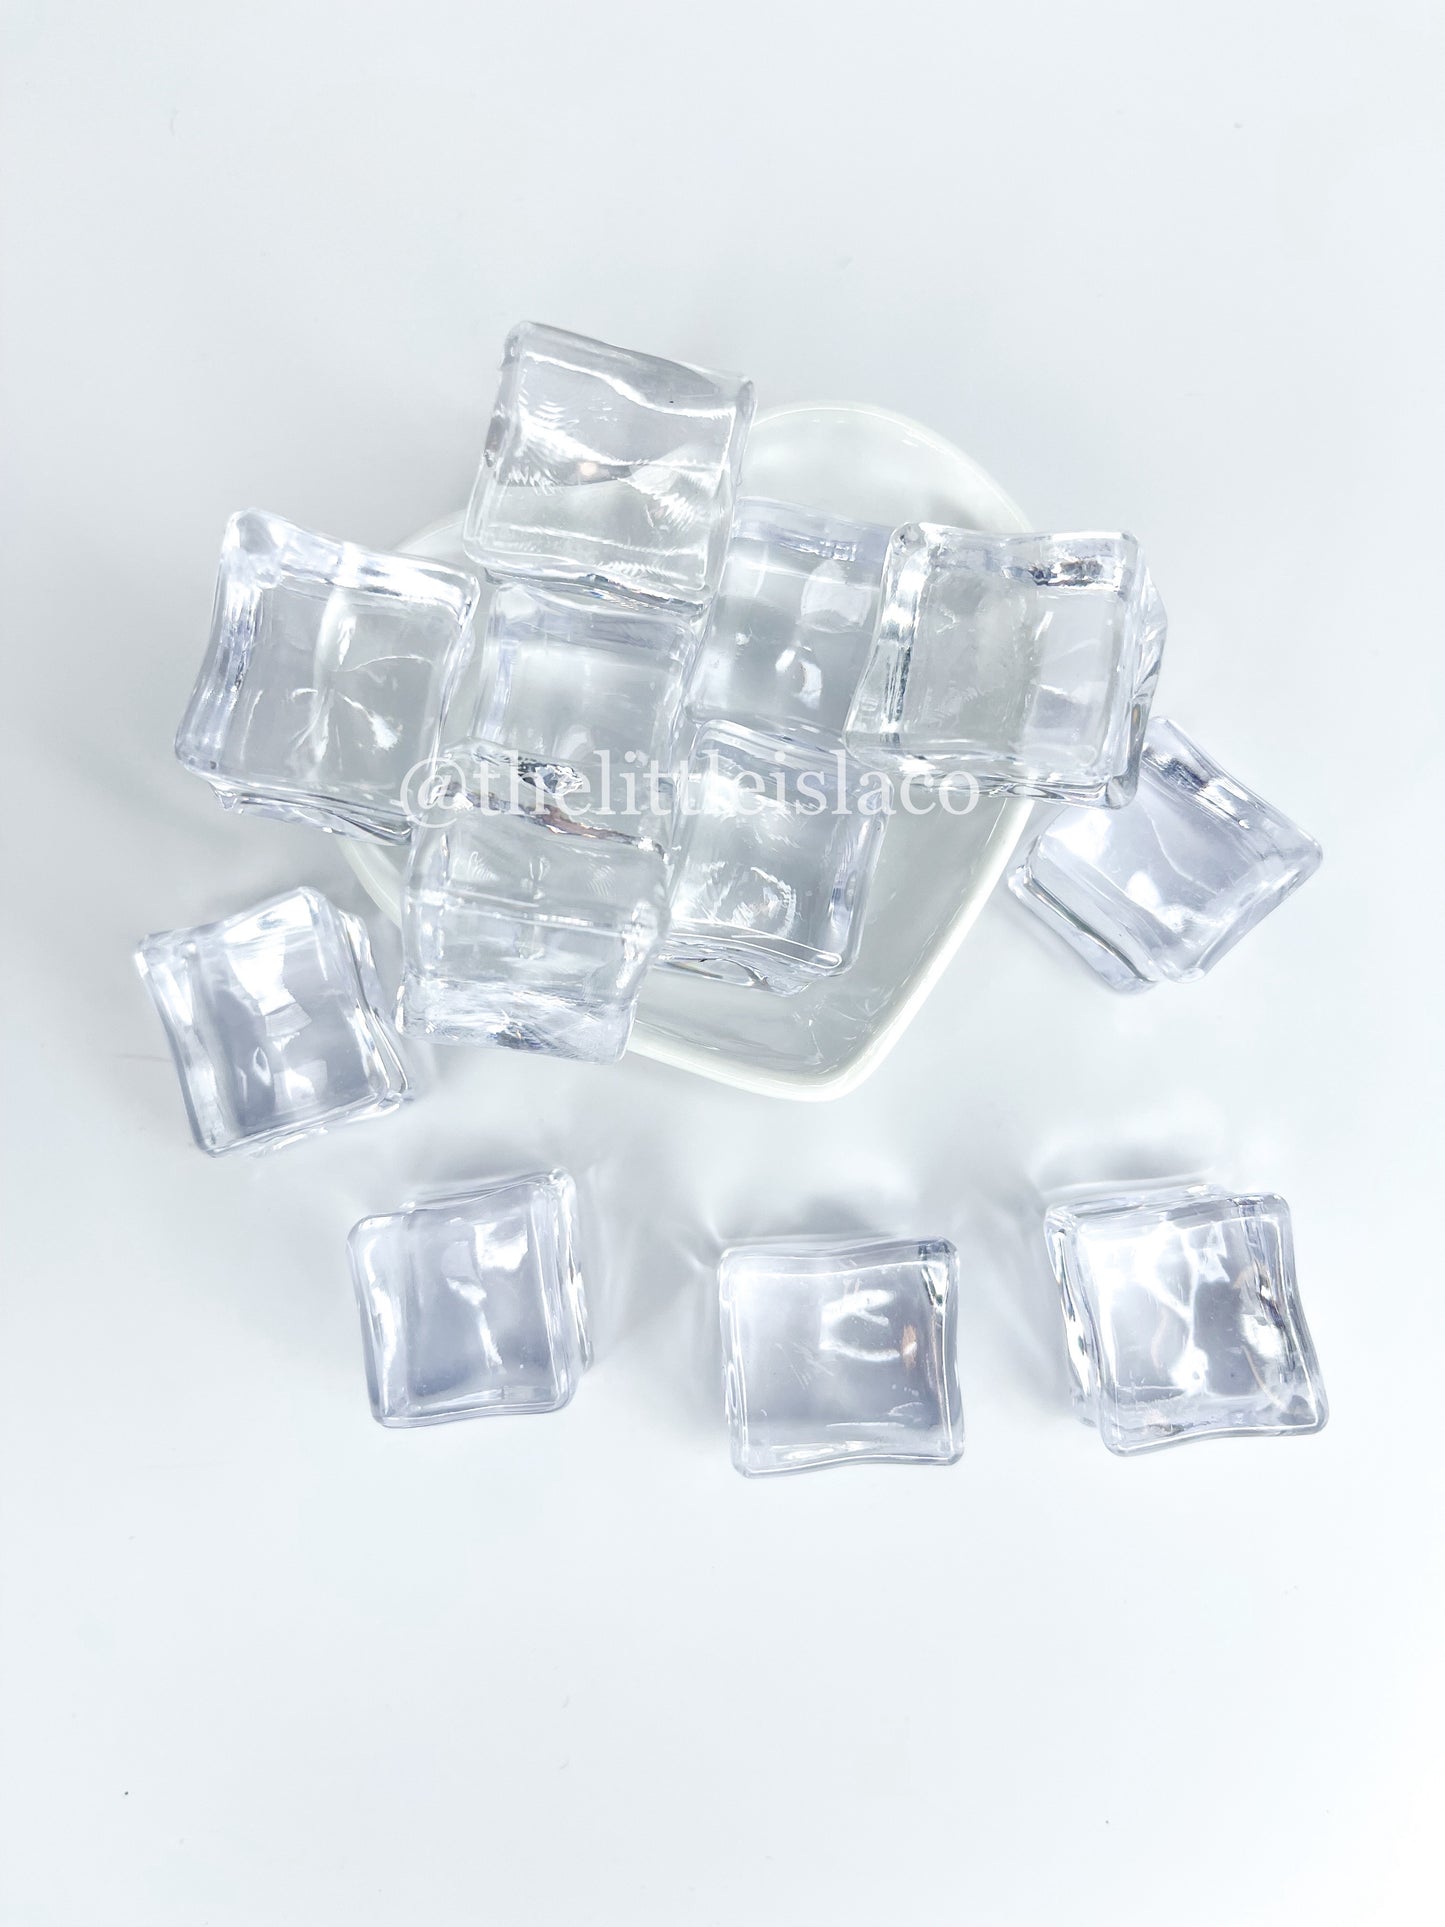 Imitation Ice Cubes (Large) - 1oz/28g